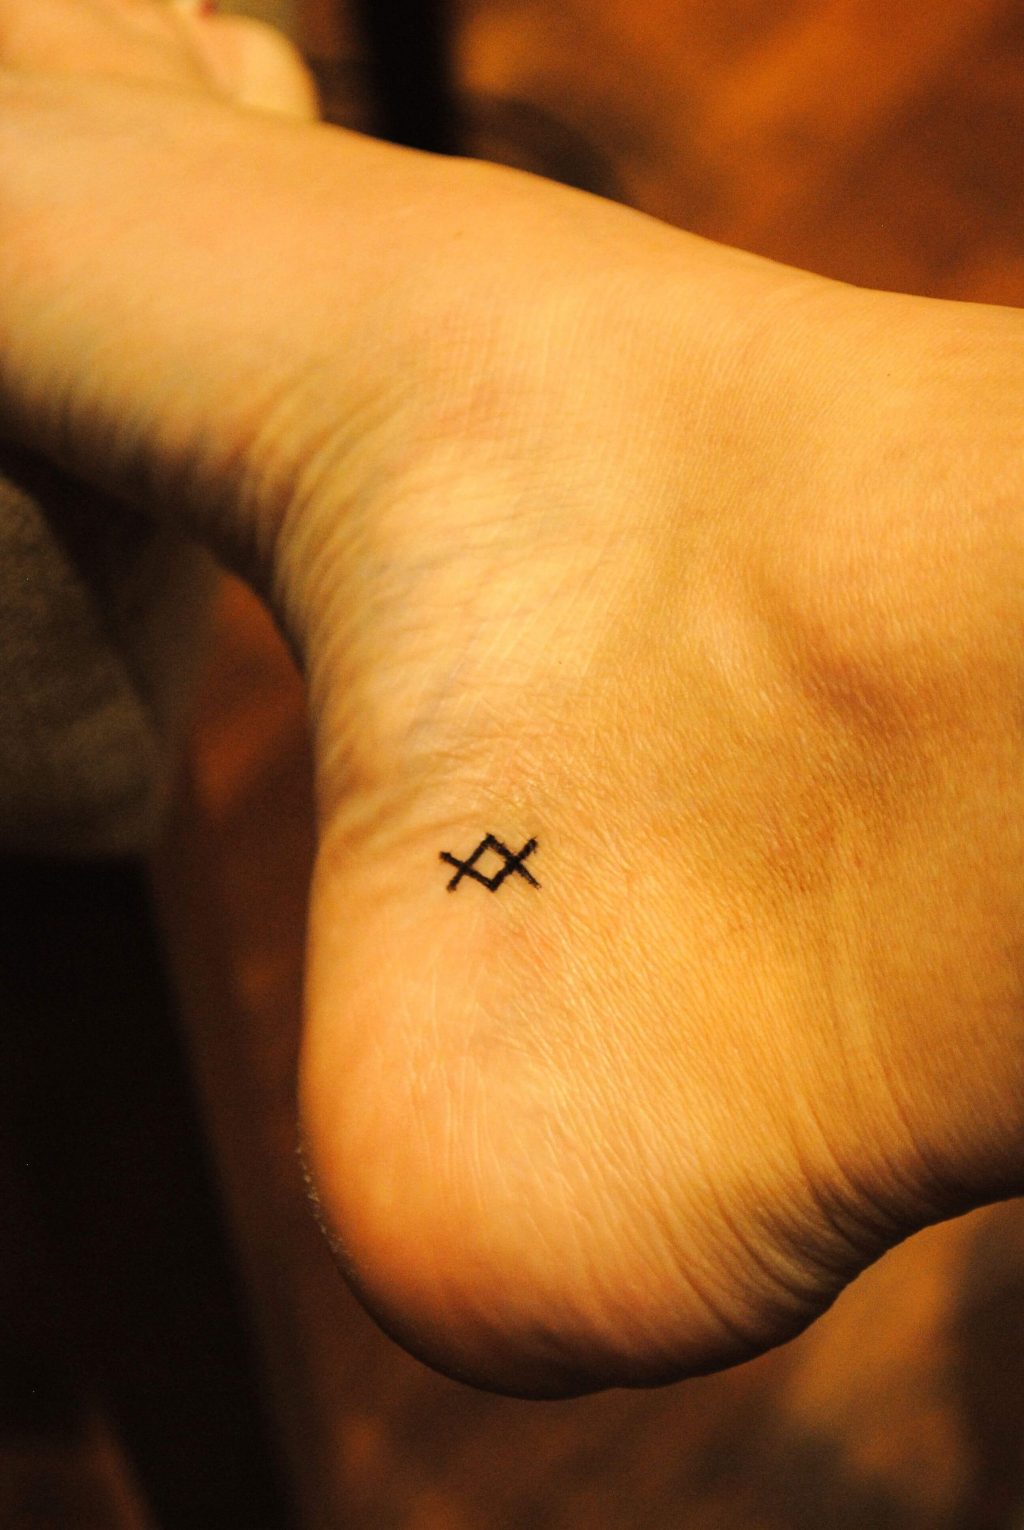 Tiny Meaningful Tattoos